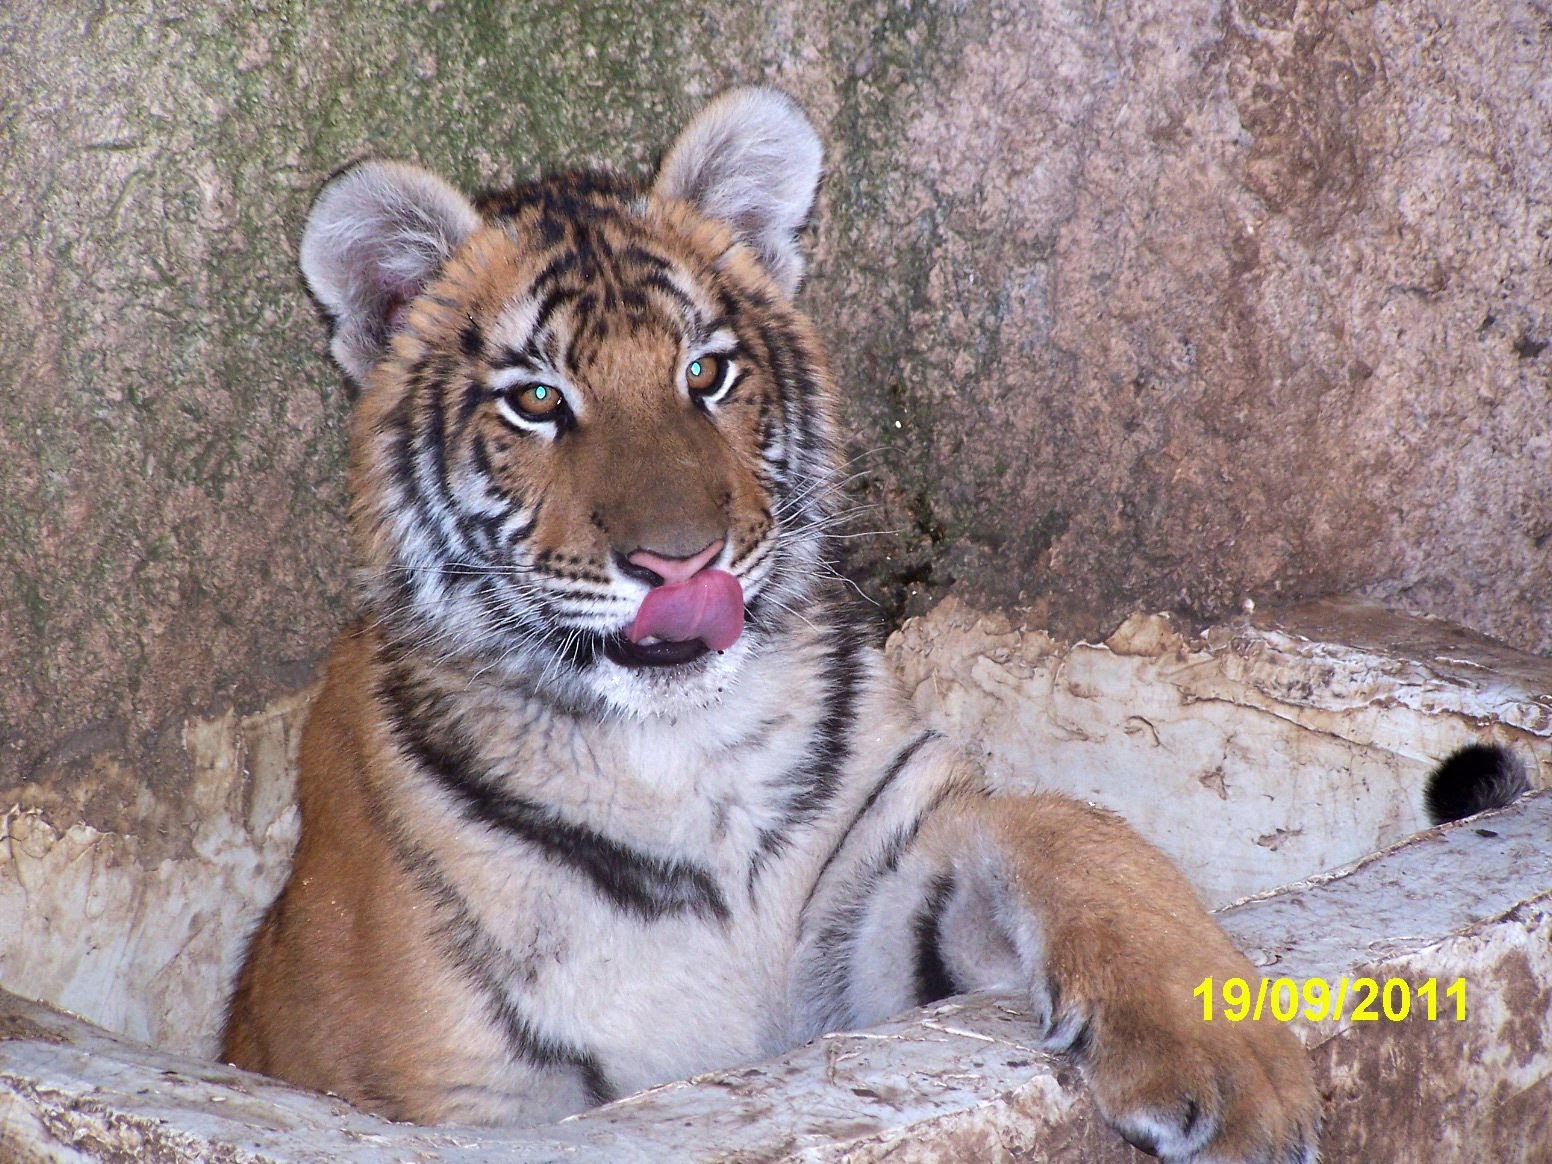 La tigresa Bindi